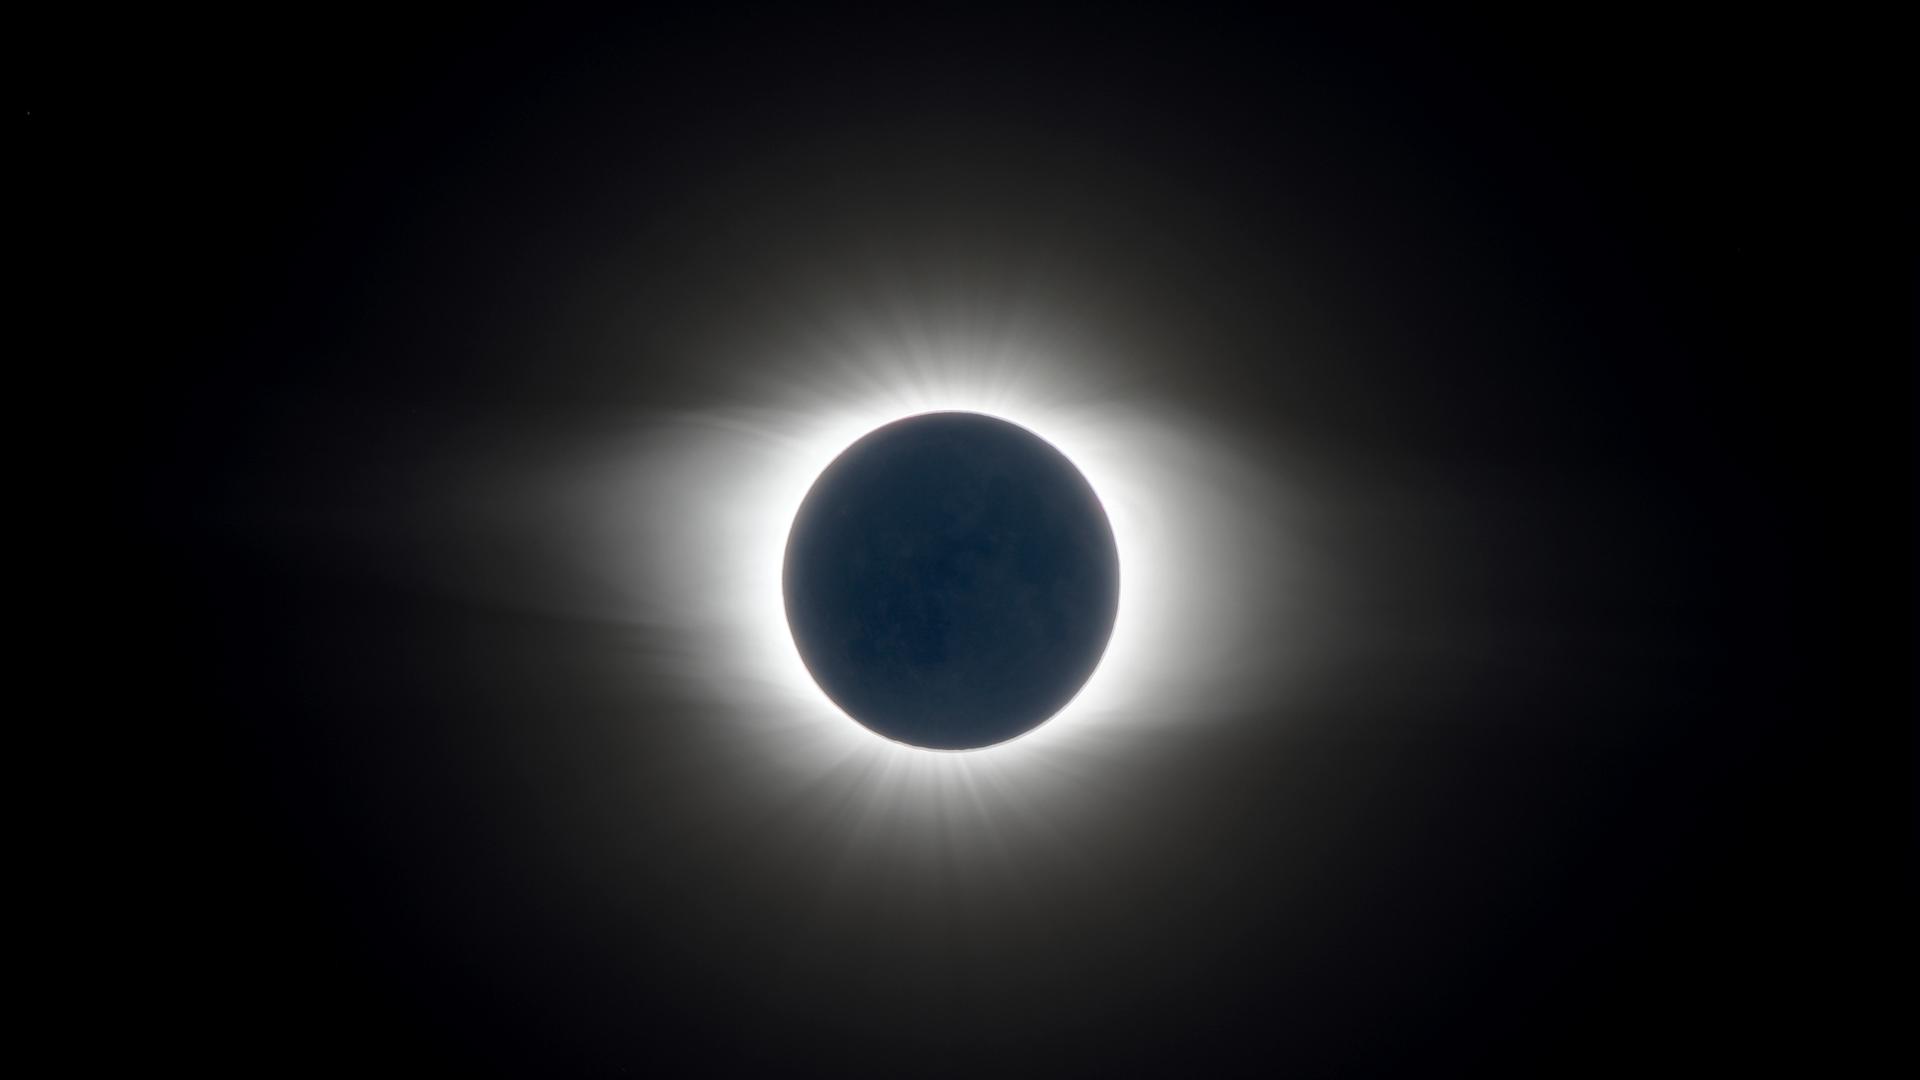 Aufnahme einer totalen Sonnenfinsternis, bei der sich die Sonnenkorona zeigt, da der Mond die Sonne komplett bedeckt.